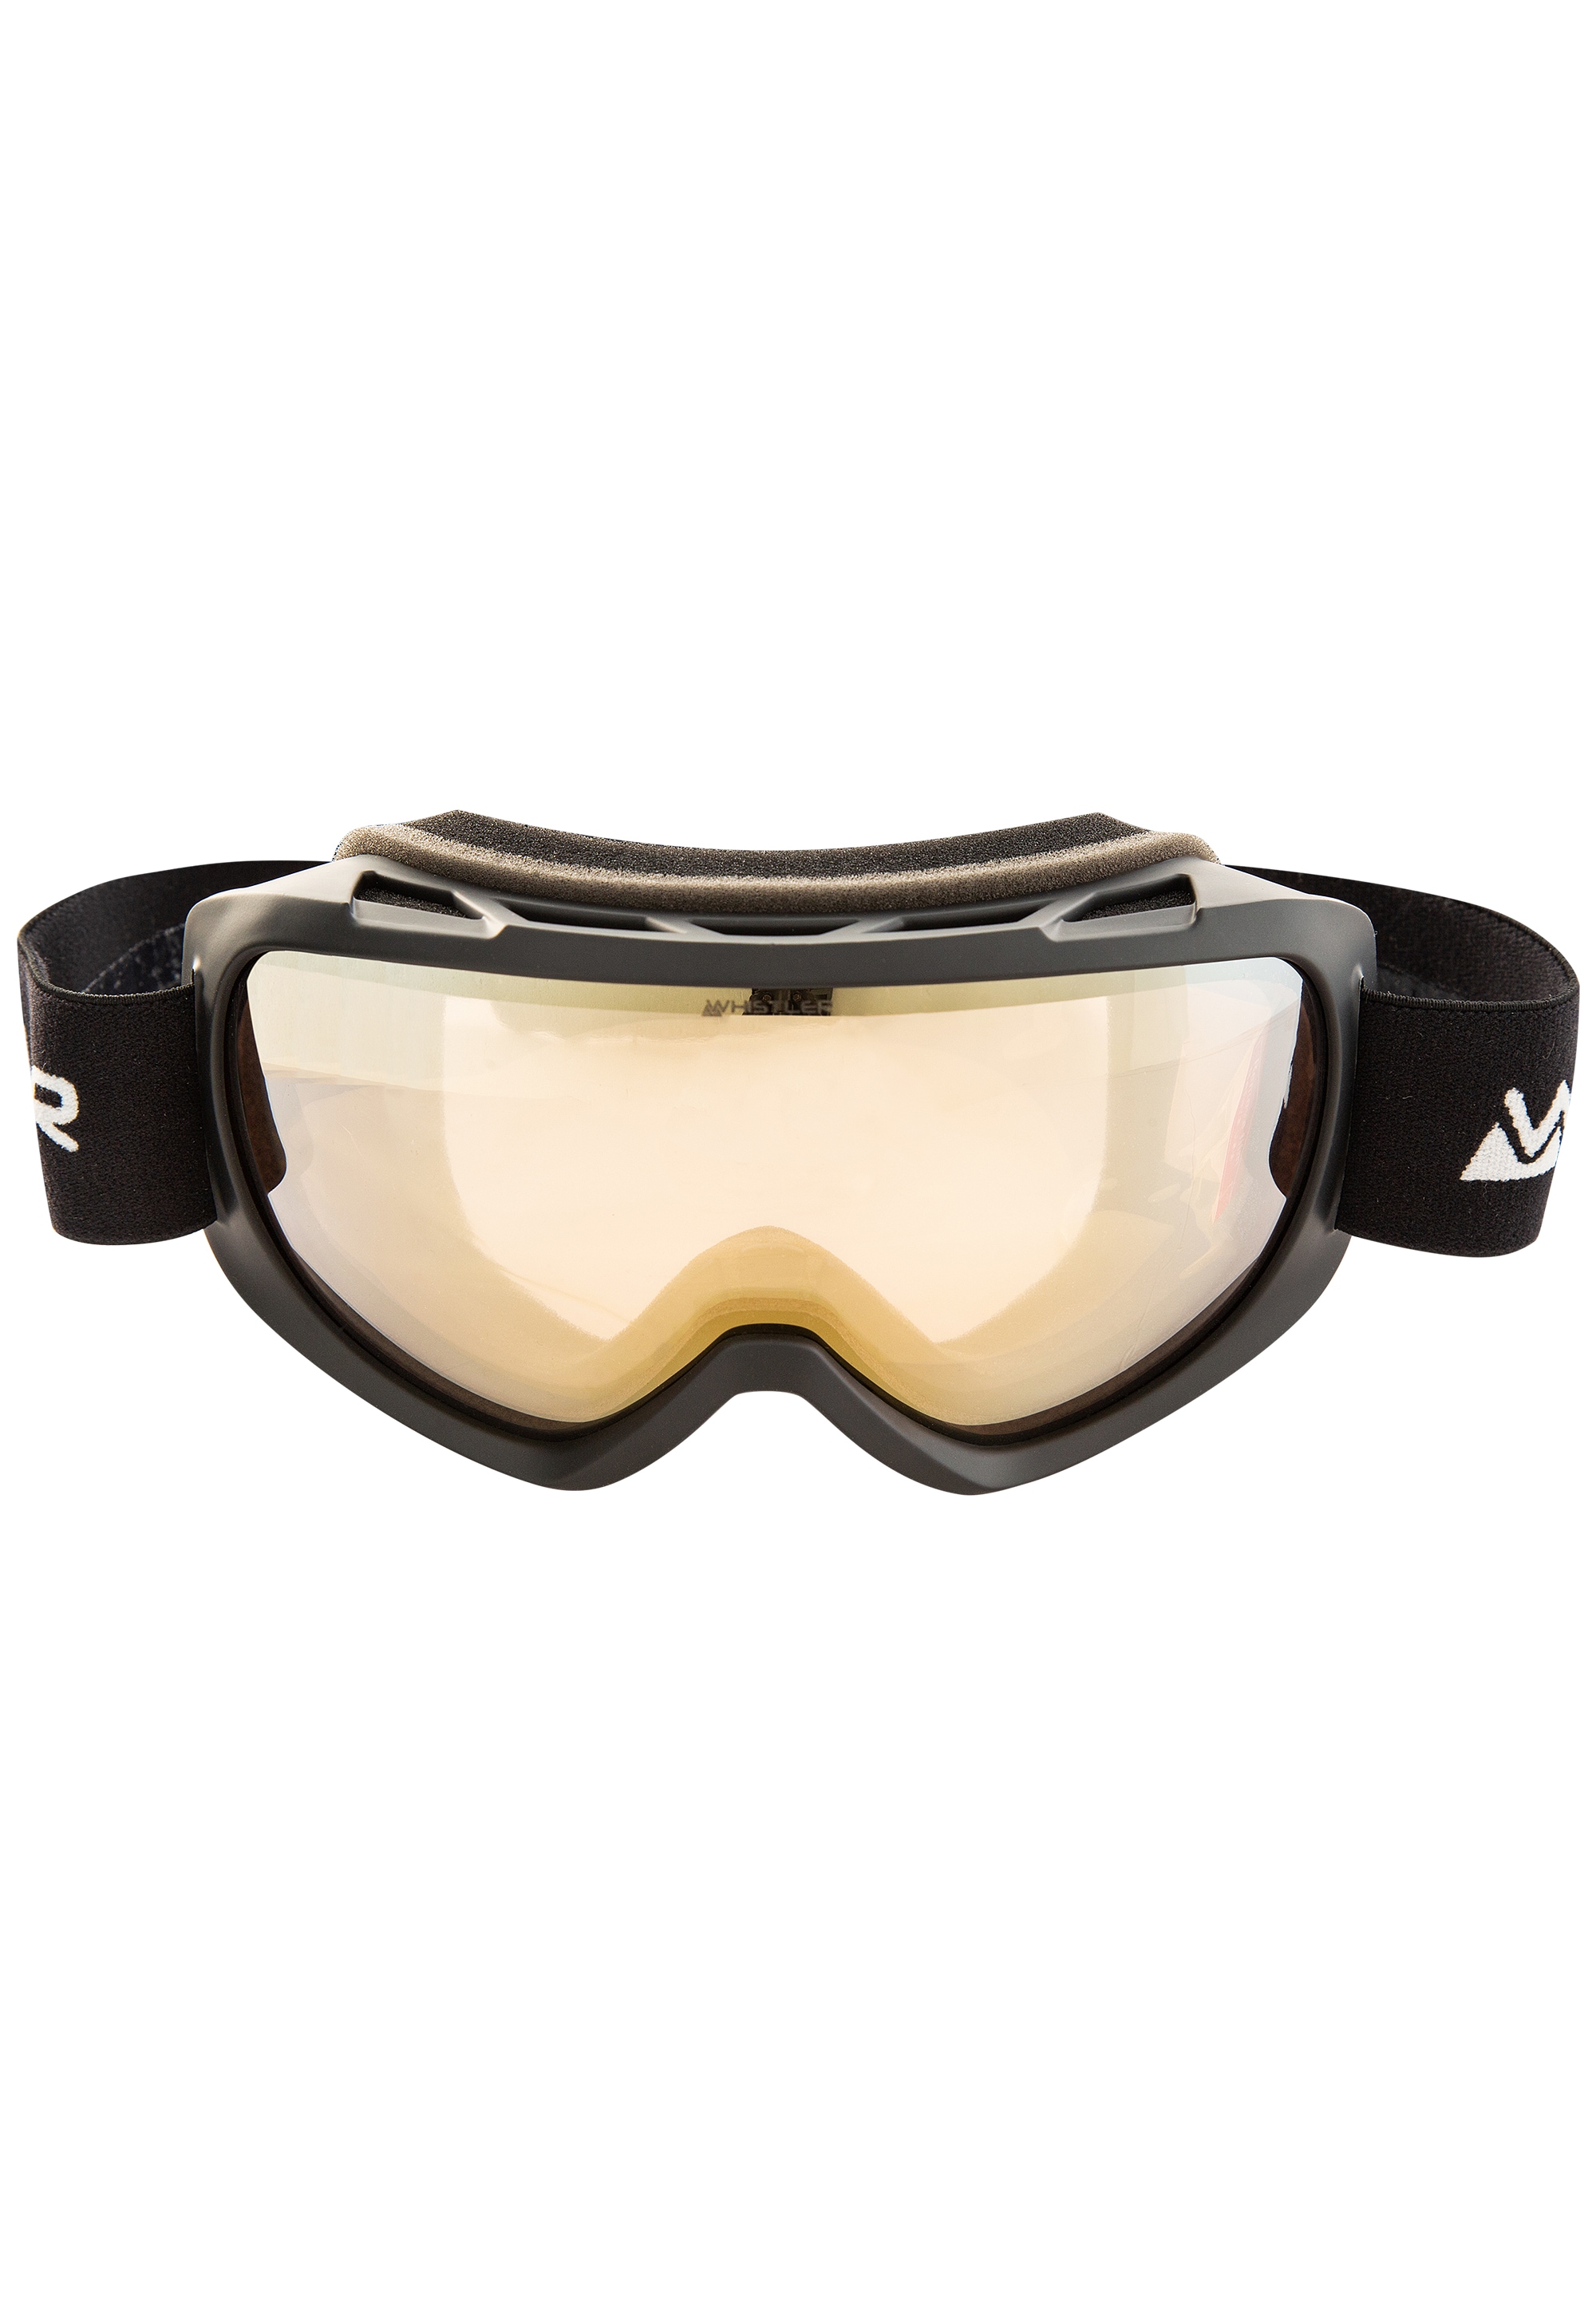 WHISTLER Skibrille »WS3.72 Clear Beschlag-Beschichtung auf praktischer BAUR Anti- Ski | Goggle«, Rechnung Vision mit